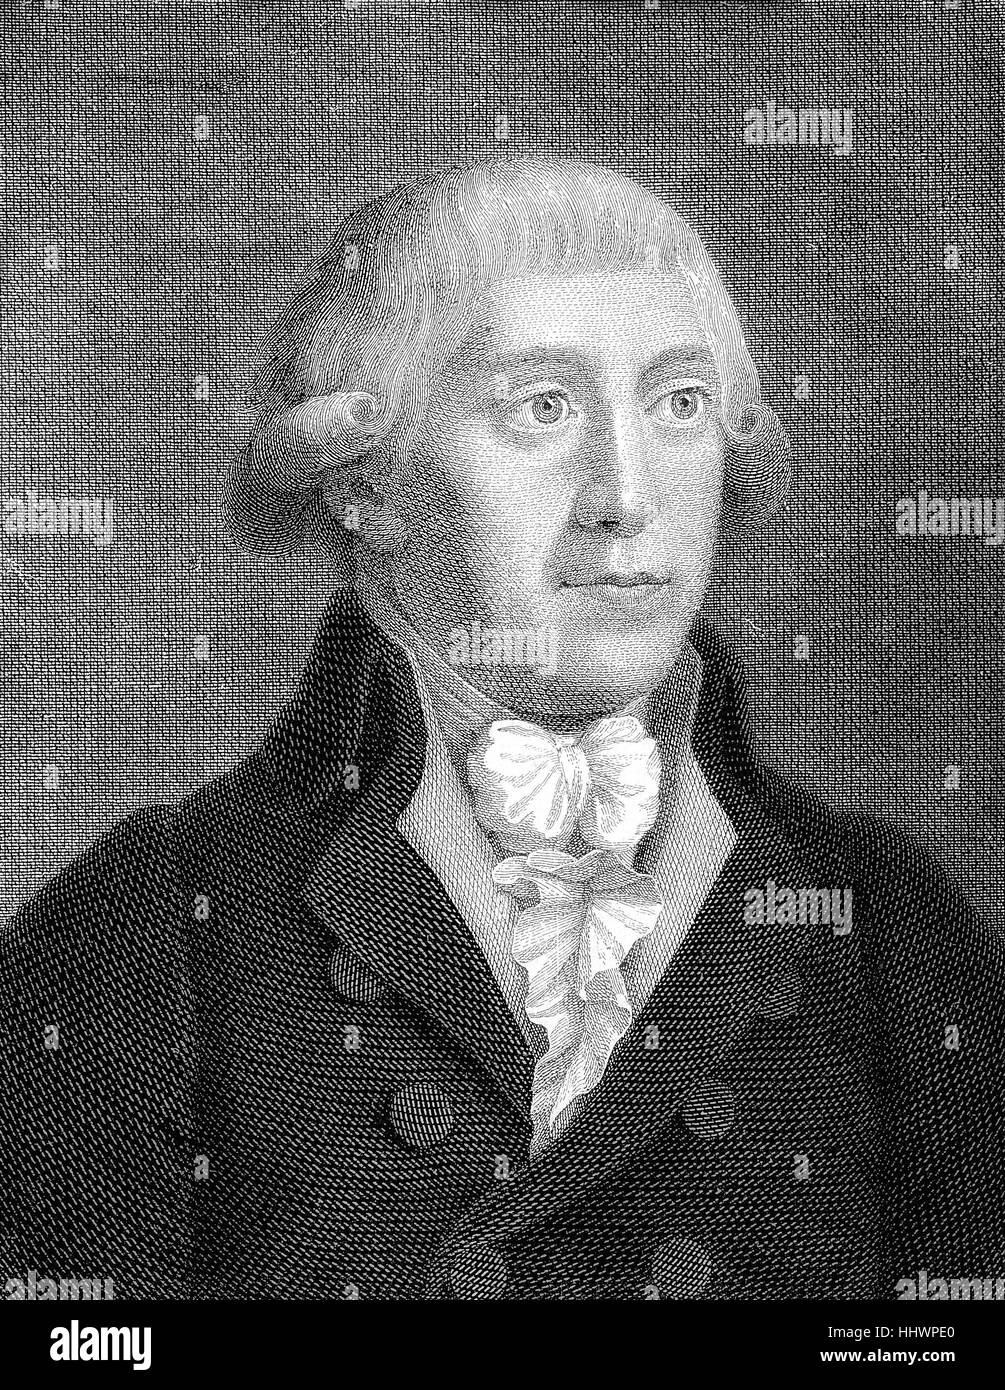 Gottfried August Buerger, December 31, 1747 - June 8, 1794, was a German poet, historical image or illustration, published 1890, digital improved Stock Photo